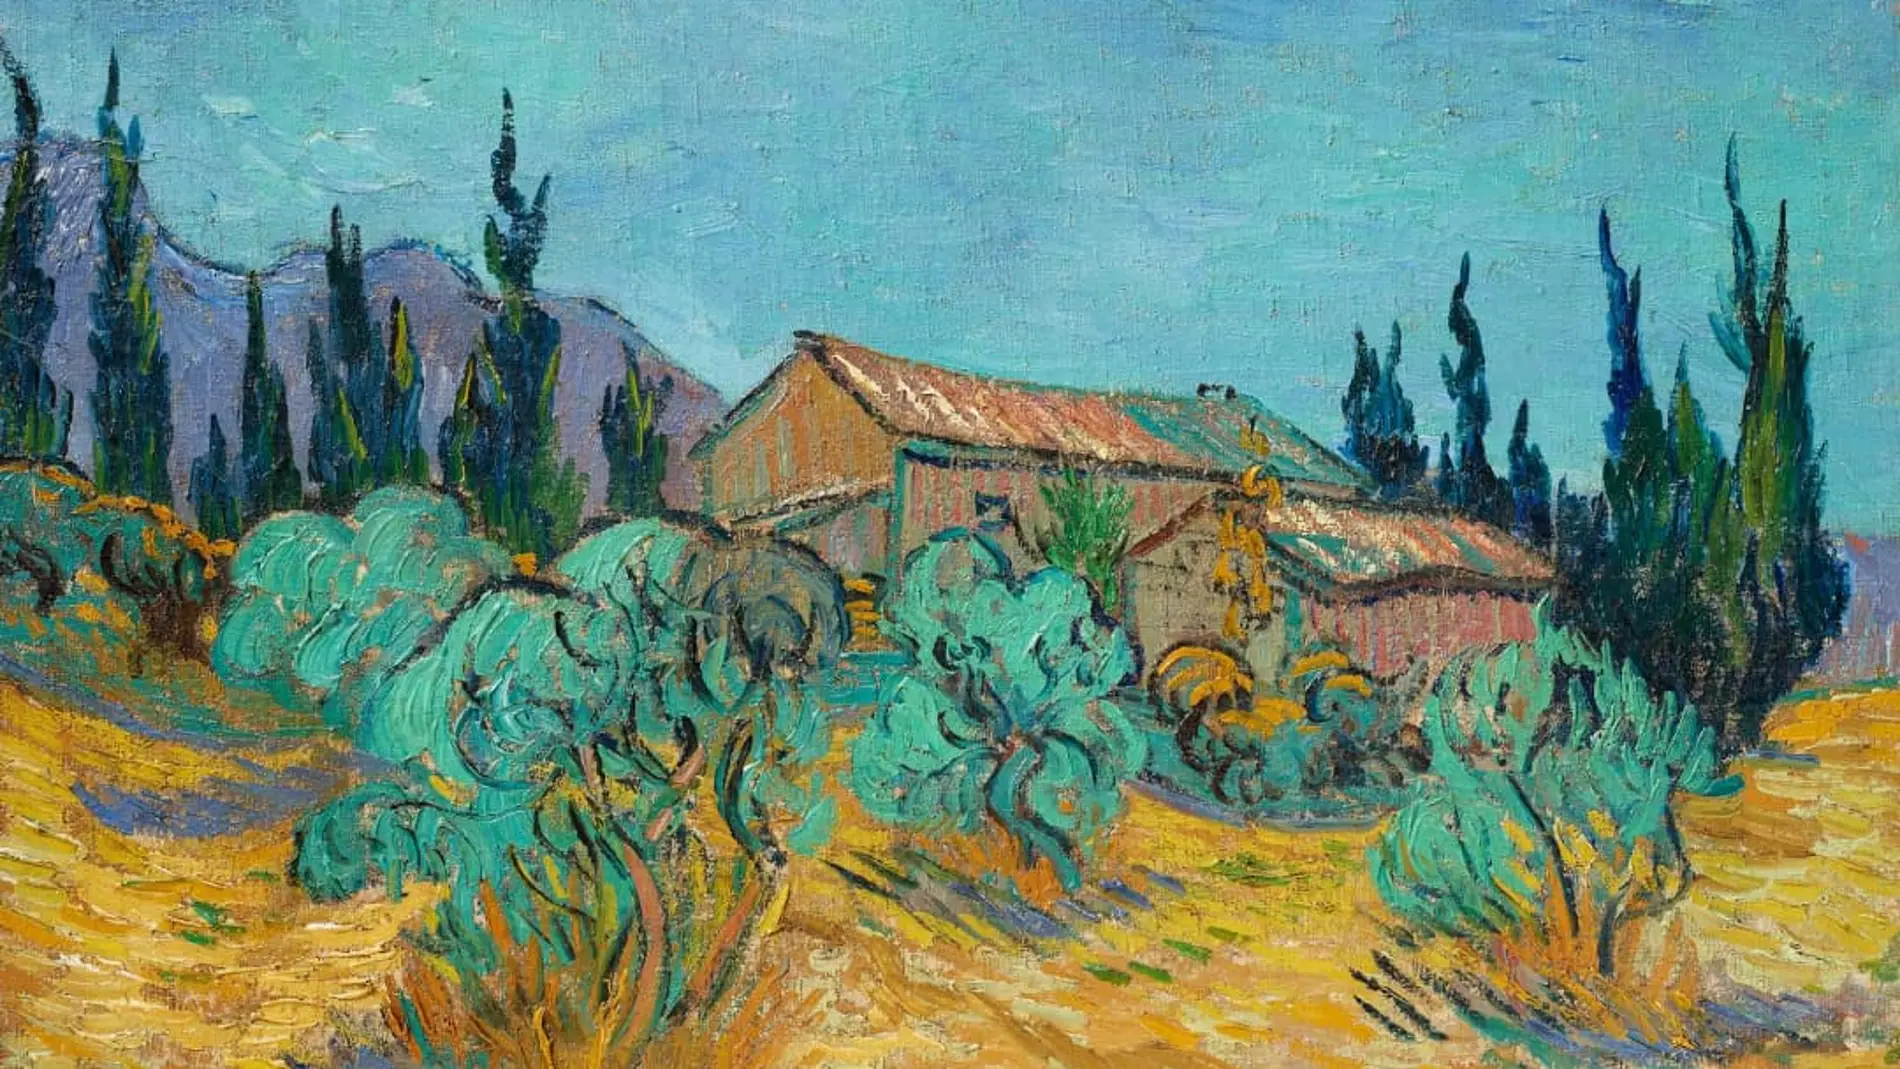 "Cabanes de bois parmi les oliviers et cyprès”, obra de Van Gogh